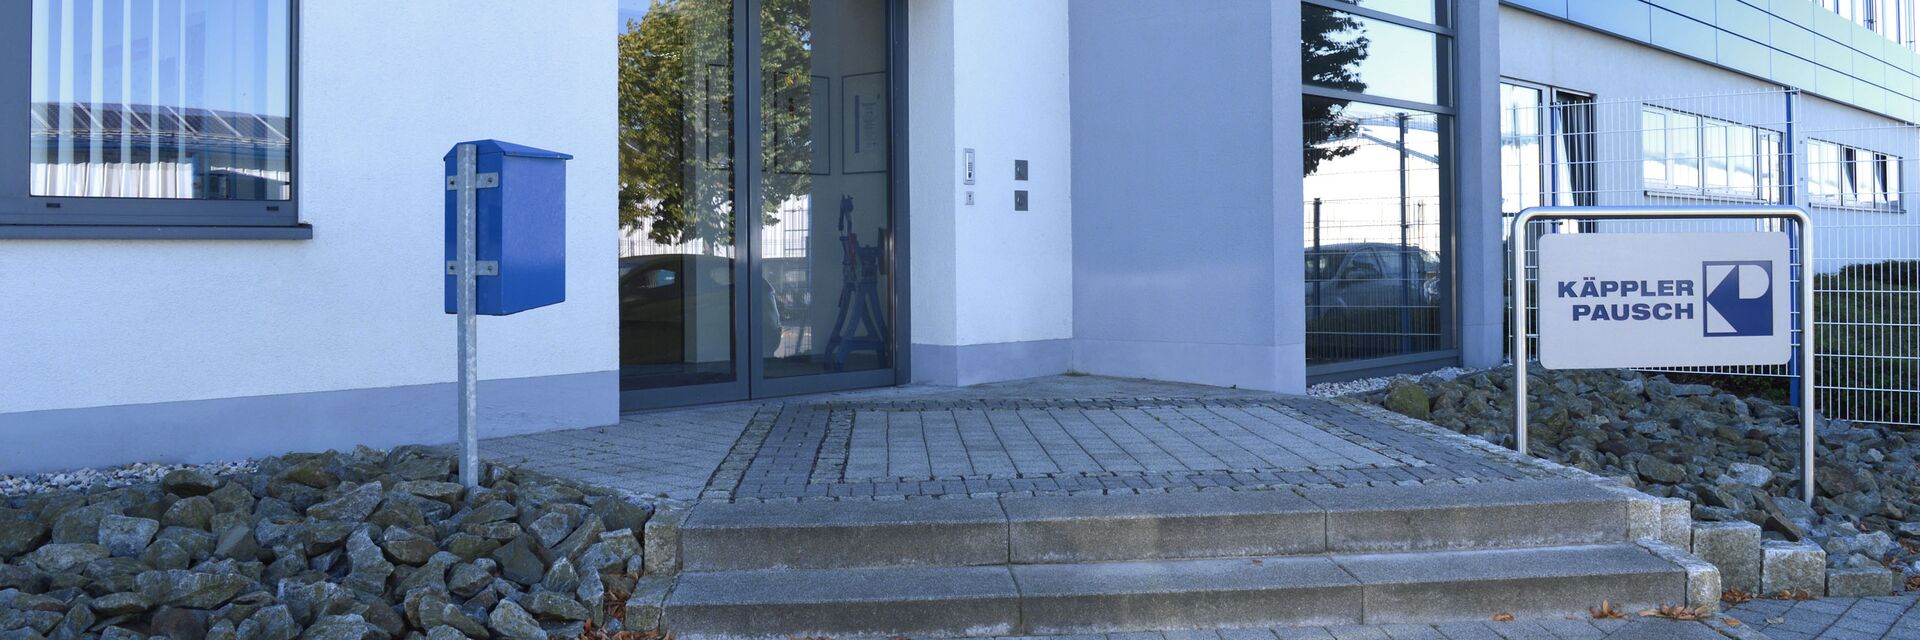 Die Käppler & Pausch GmbH in Neukirch/Lausitz heißt Sie herzlich willkommen!